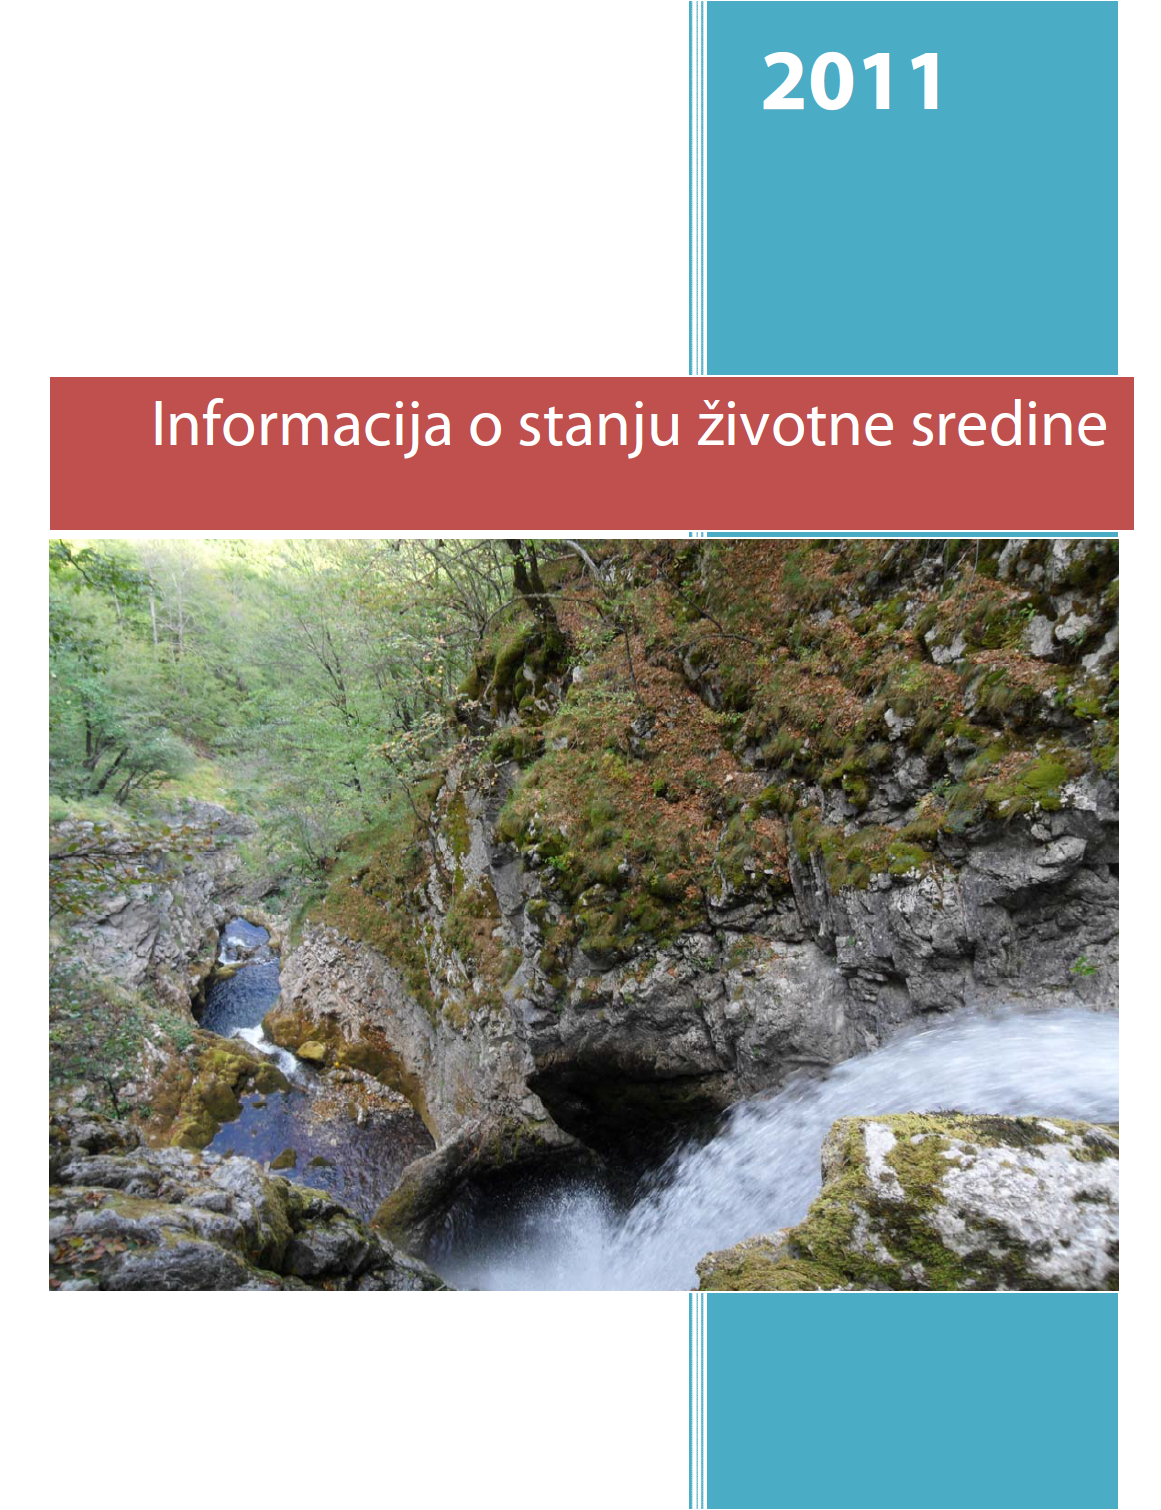 Informacija o stanju životne sredine u Crnoj Gori za 2011